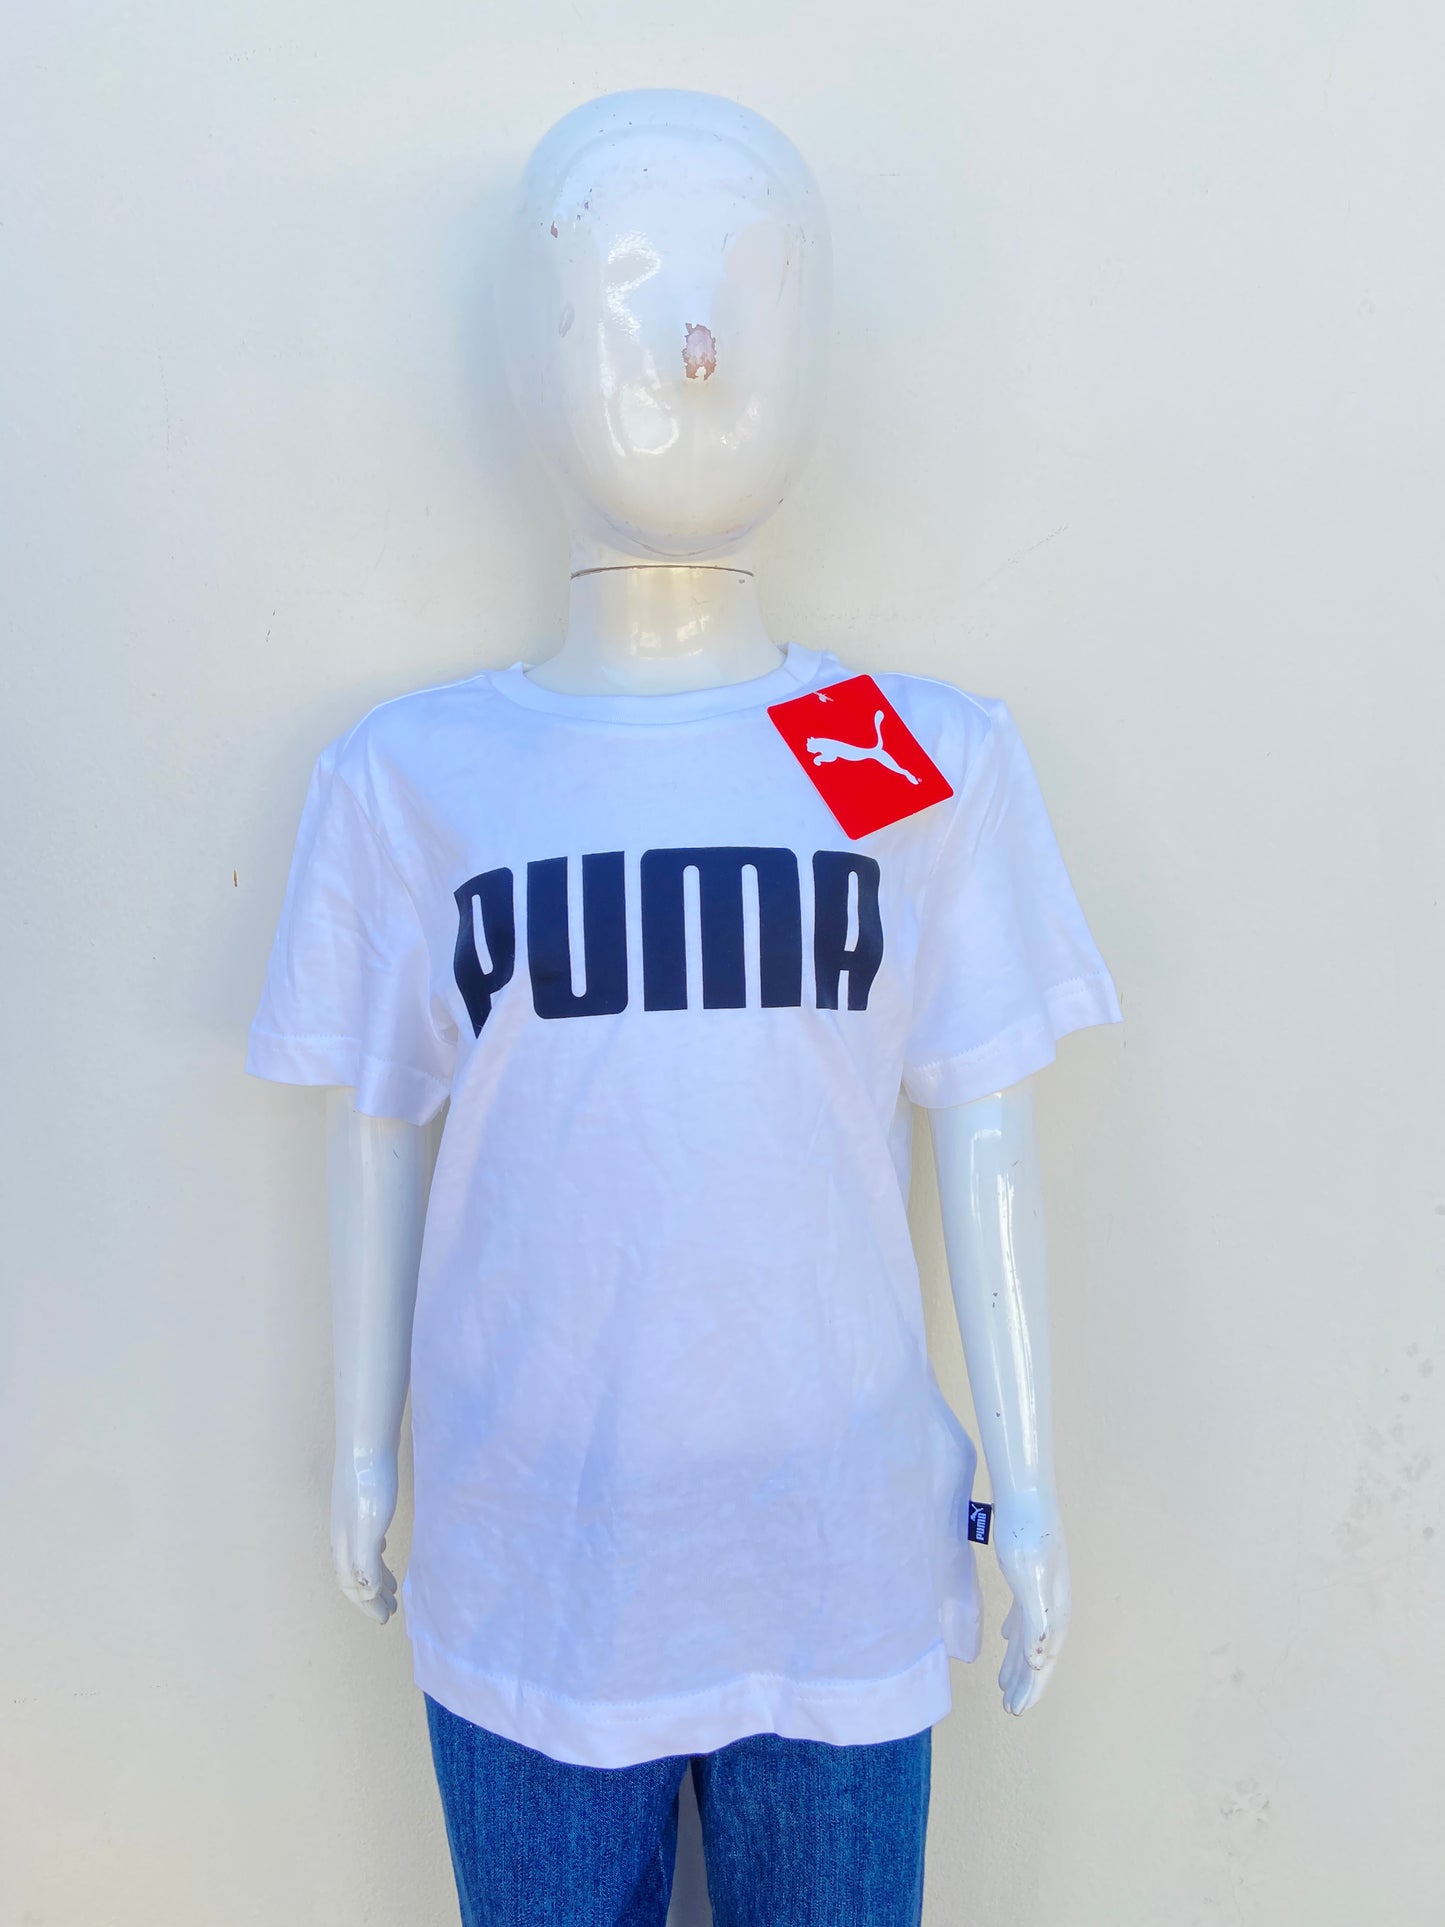 T-shirt Puma original blanco con letras PUMA en negro.